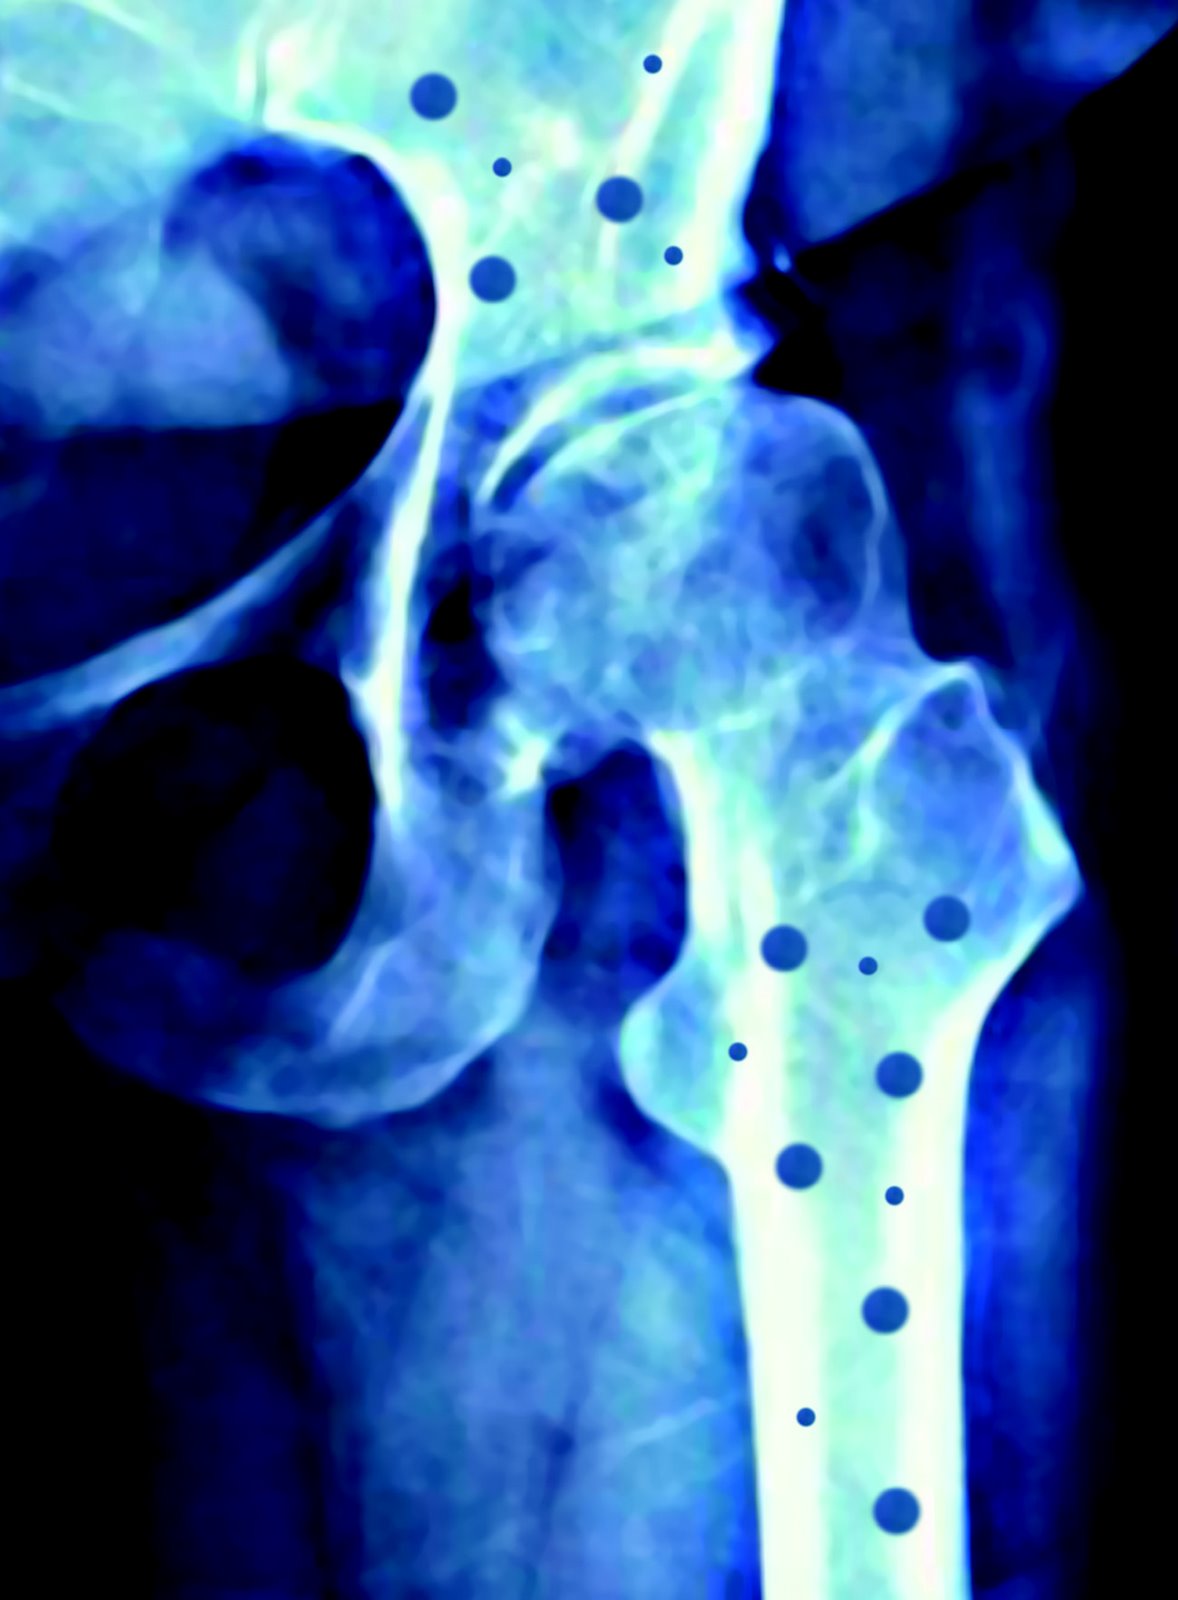 [osteoporisis.jpg]